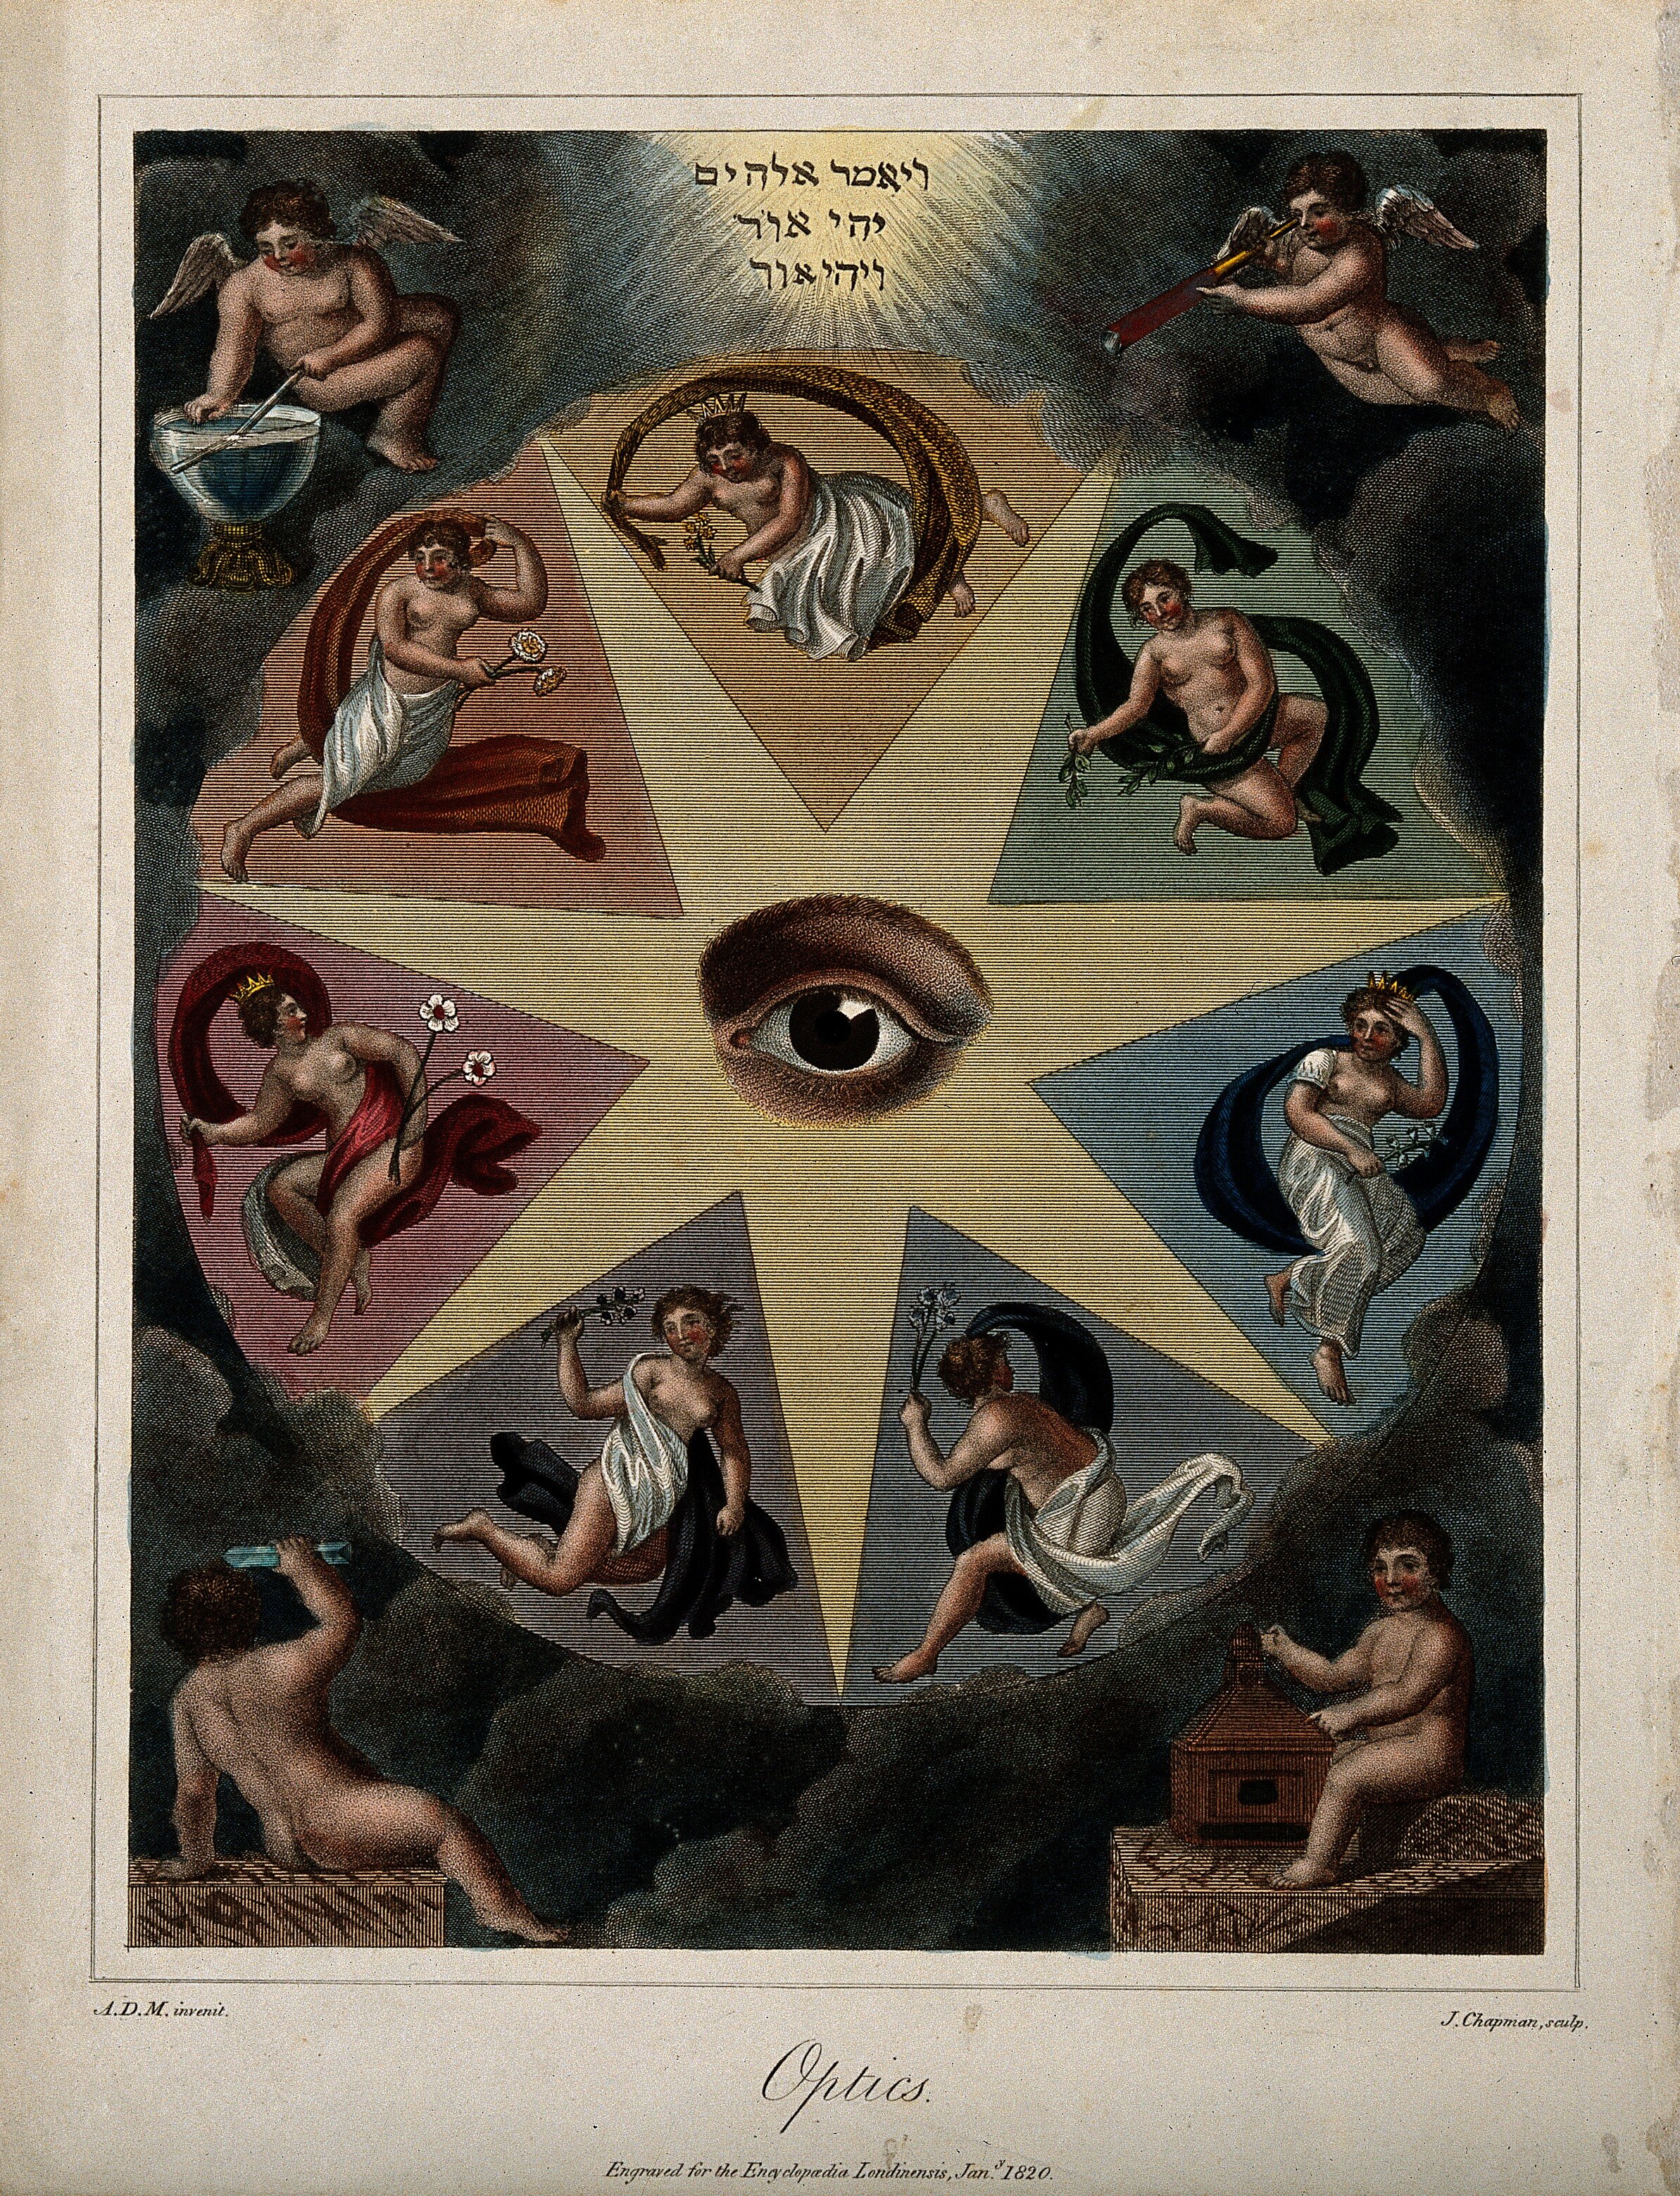 An Eye in a Star, by J. Chapman